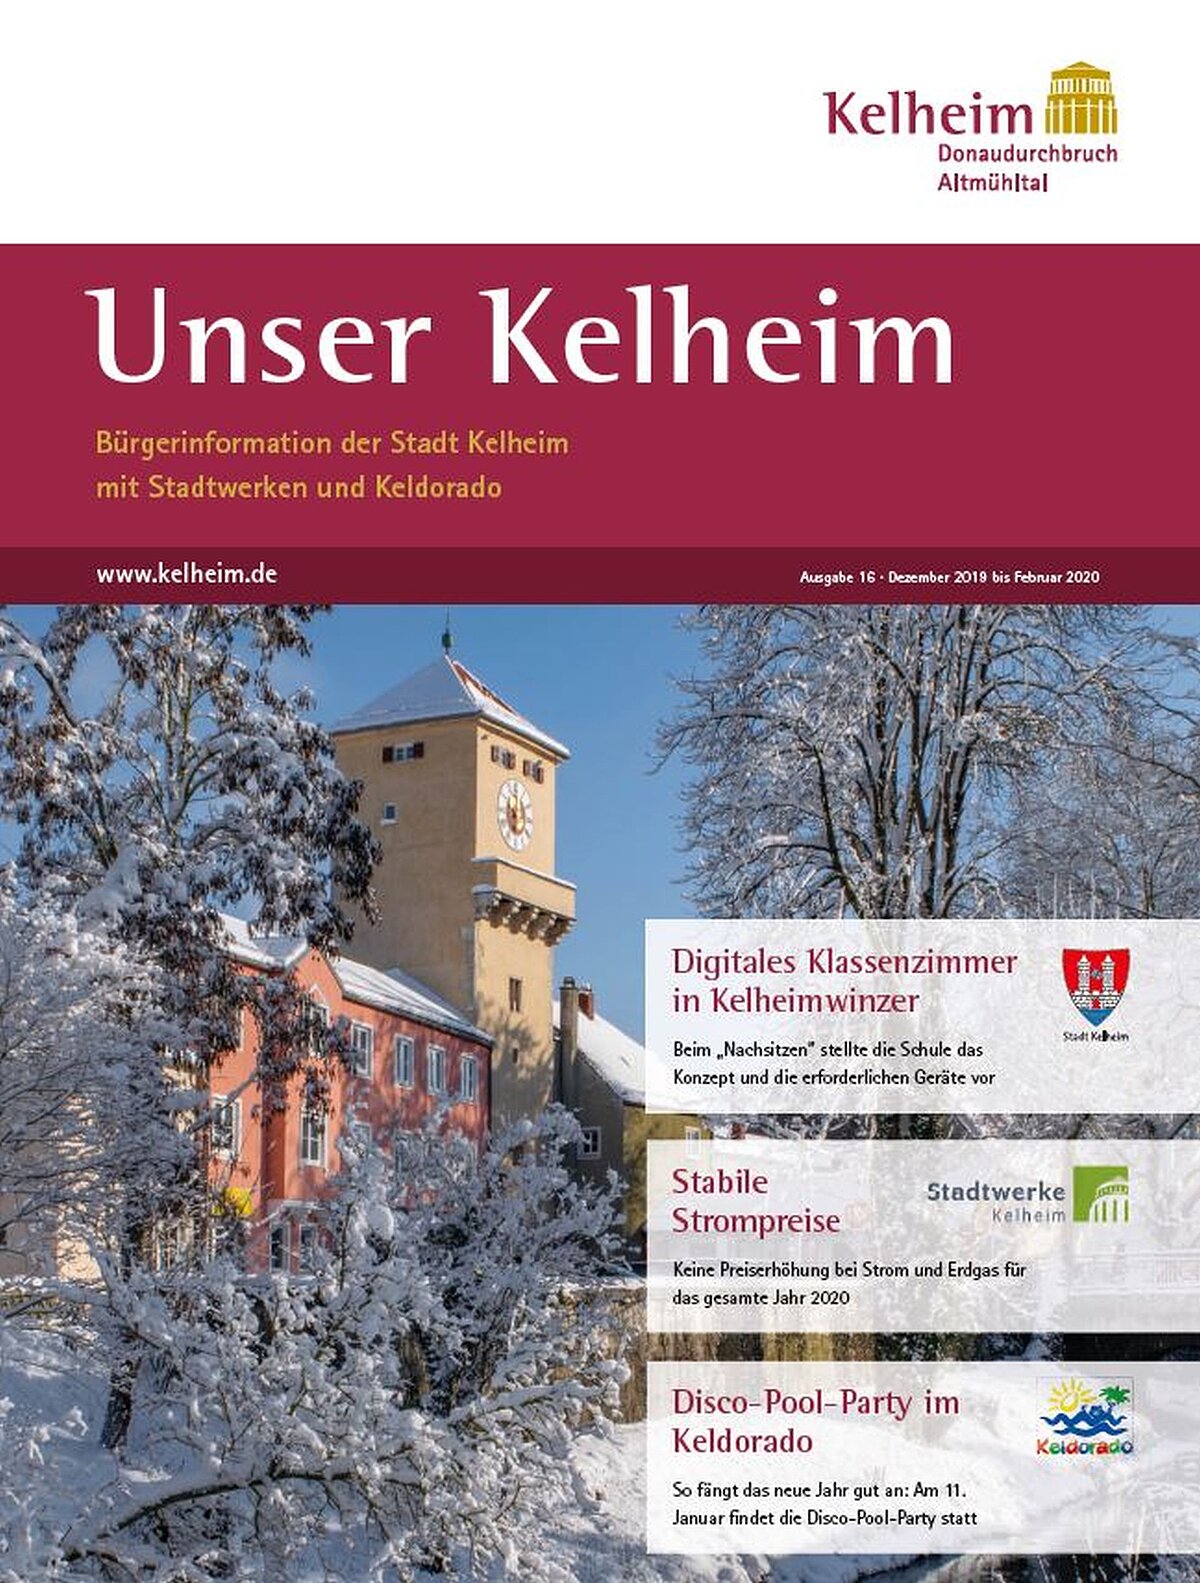 unser-kelheim-winter-2019_22.jpg